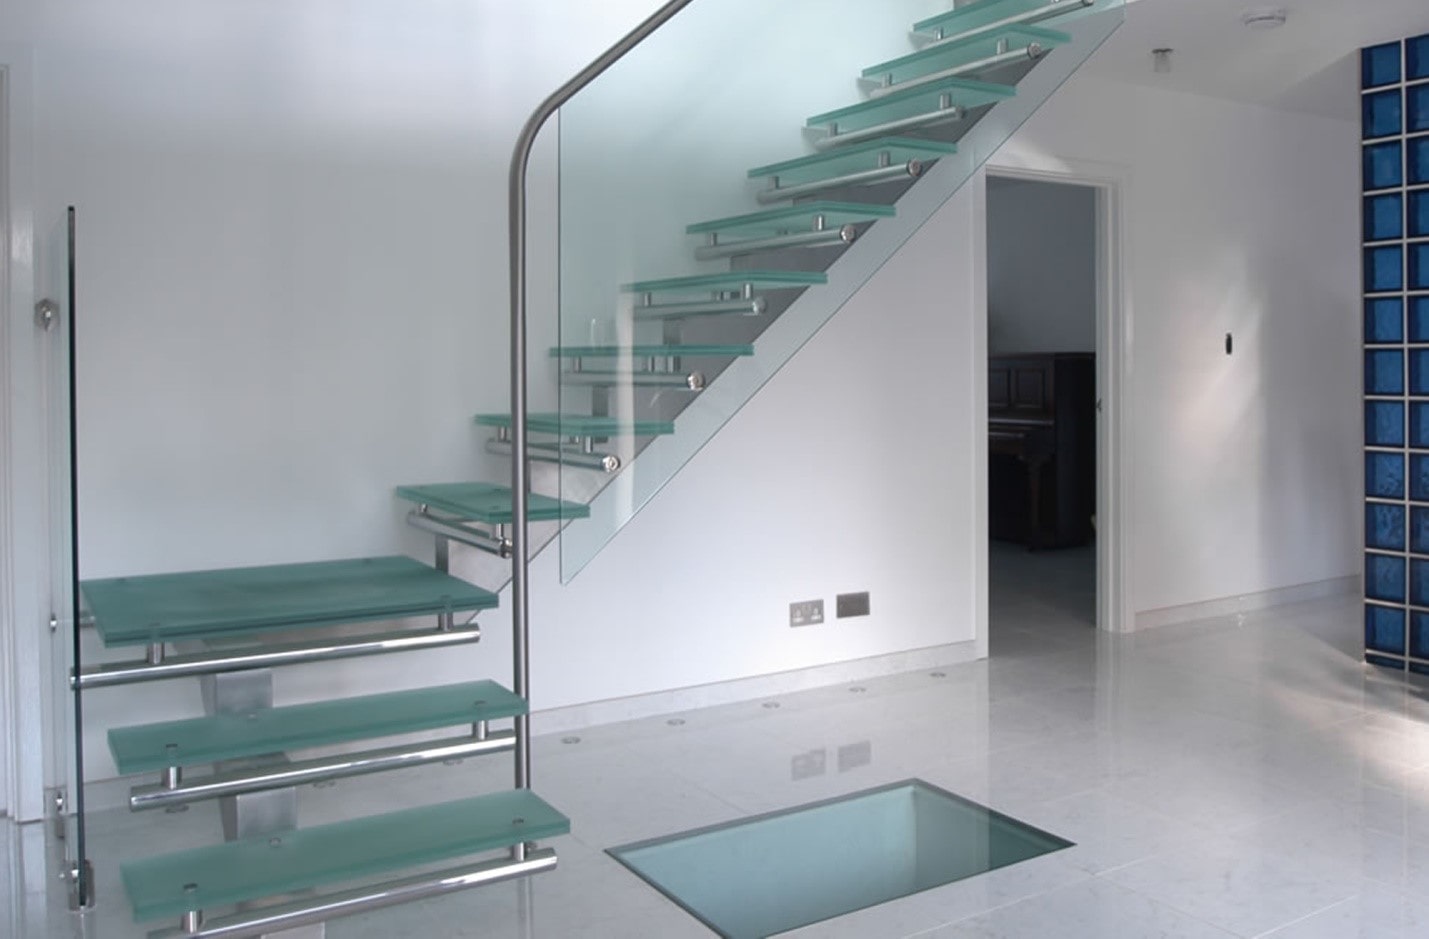 آیا پله ی شیشه ای خطرناک است؟ | شرکت معماری و دکوراسیون دکوطرح 09122460089